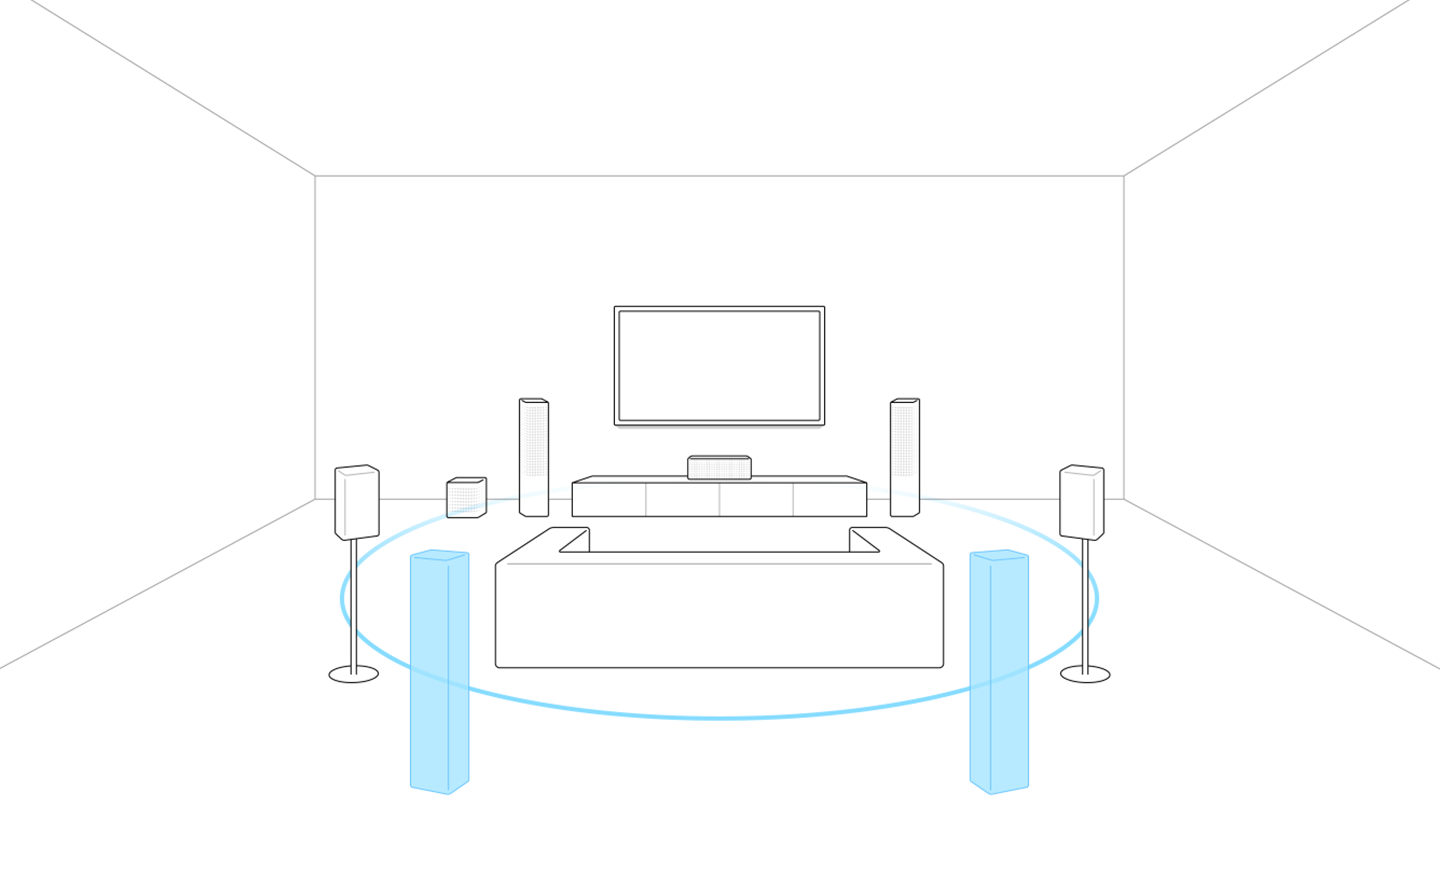 תמונת מתאר של טלוויזיה, ספה ורמקולים. גרסאות בצבע כחול של שני רמקולים שממוקמים מאחורי הספה